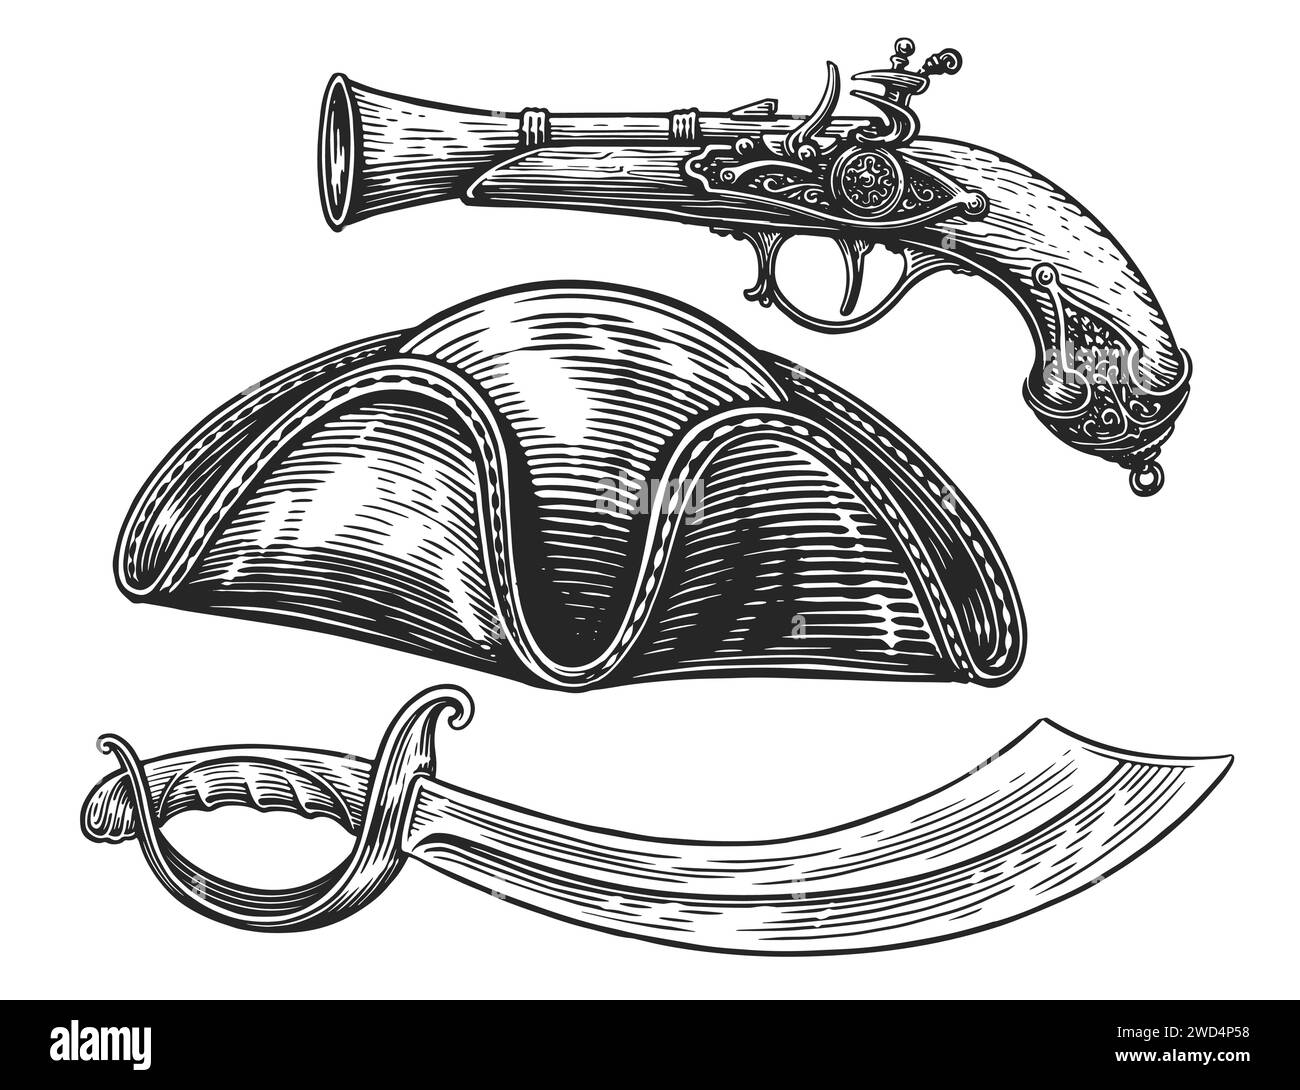 Ensemble pirate. Sabre, pistolet, chapeau armé. Illustration vectorielle vintage dessinée à la main Illustration de Vecteur